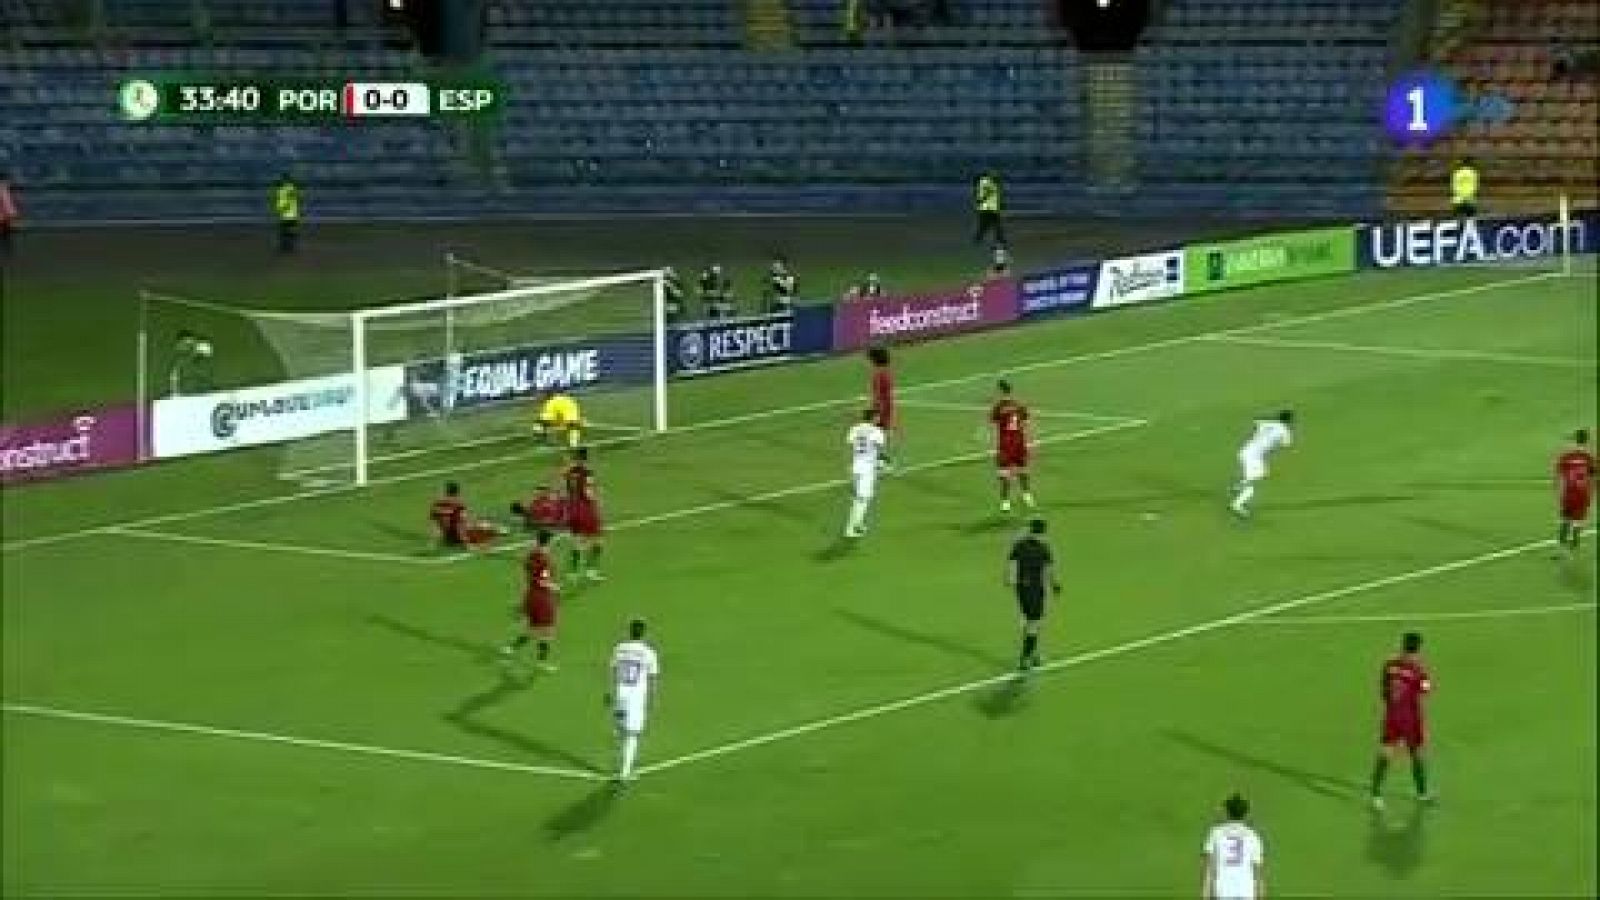 Final Europeo sub'19 | Portugal 0-2 España: Ferrán Torres marca el 0-1 de volea